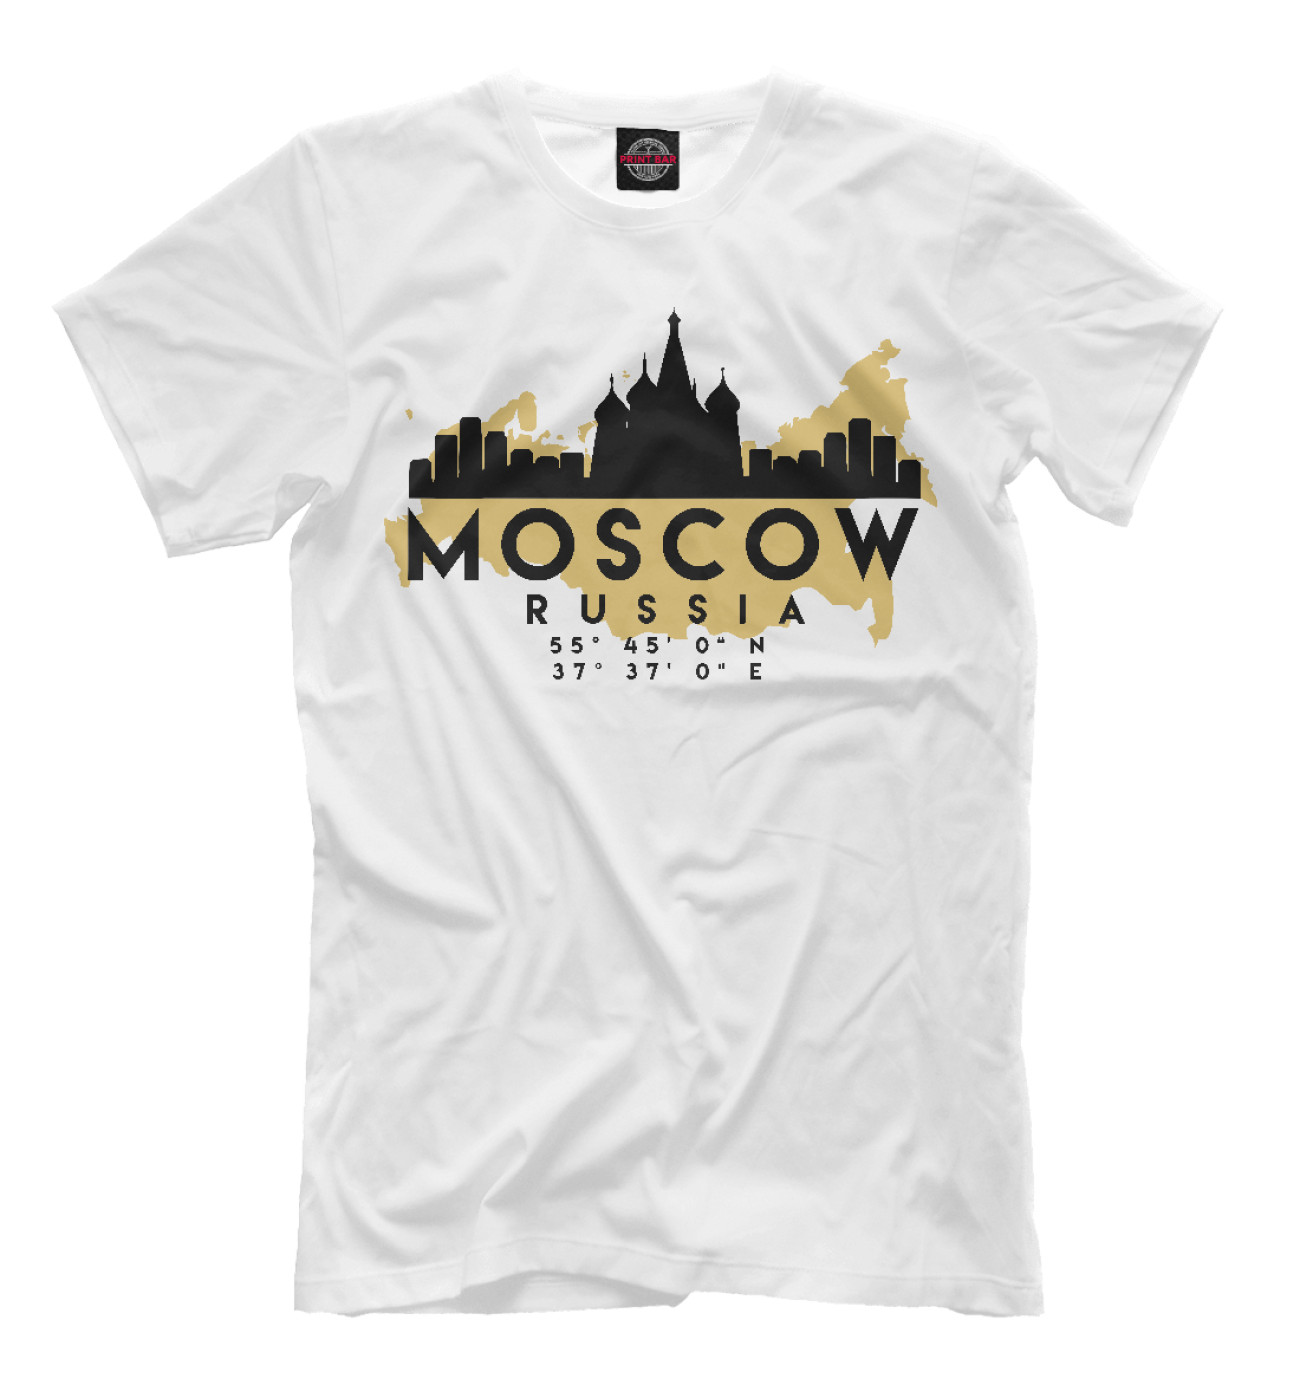 Мужская Футболка Москва (Россия), артикул: MOS-149799-fut-2